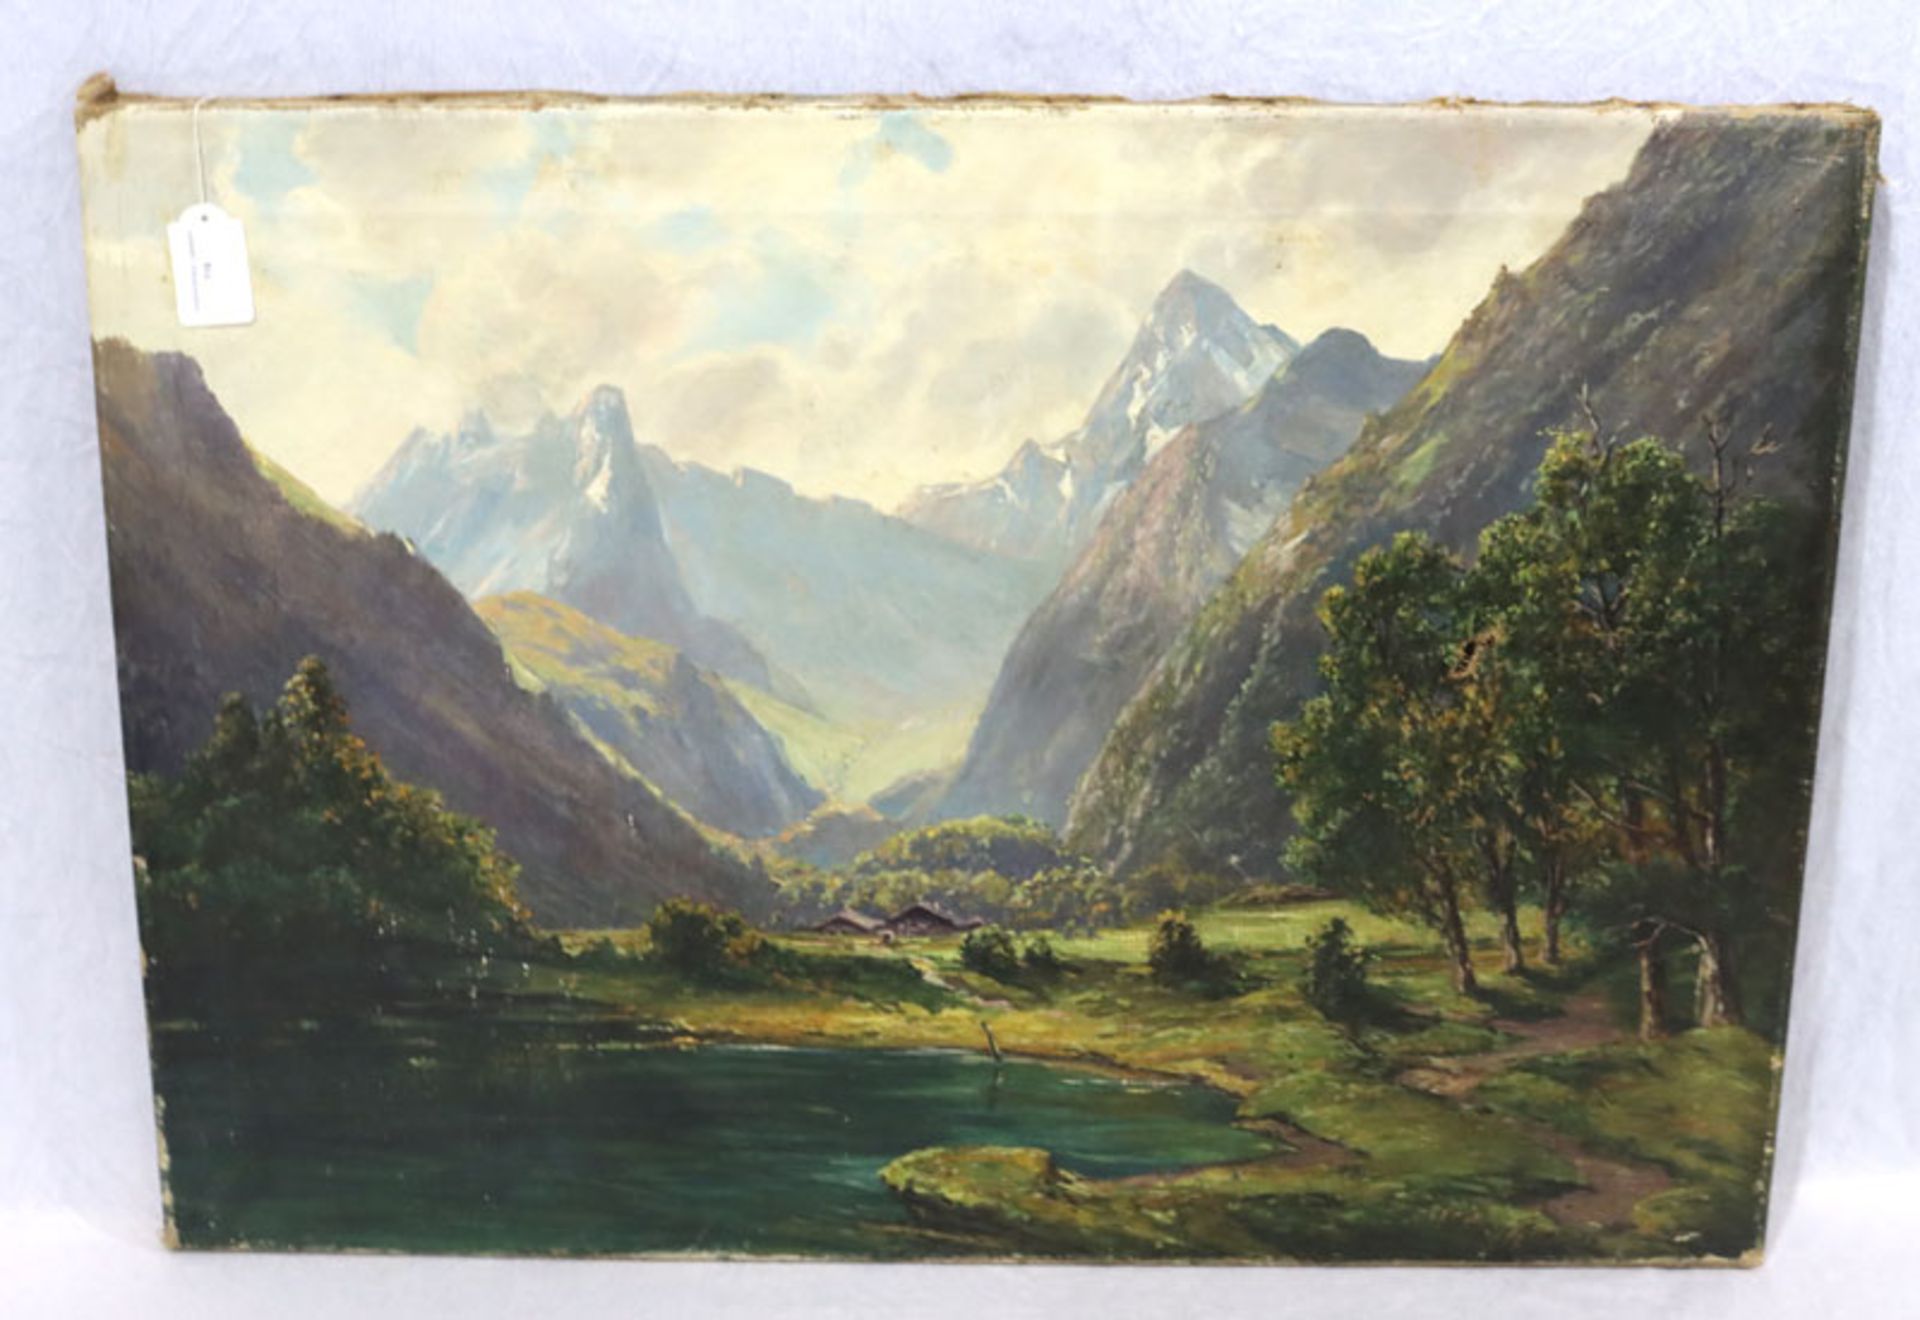 Gemälde ÖL/LW 'Achensee', undeutlich signiert Merk ?, LW mit Reparaturstellen, ohne Rahmen 52 cm x